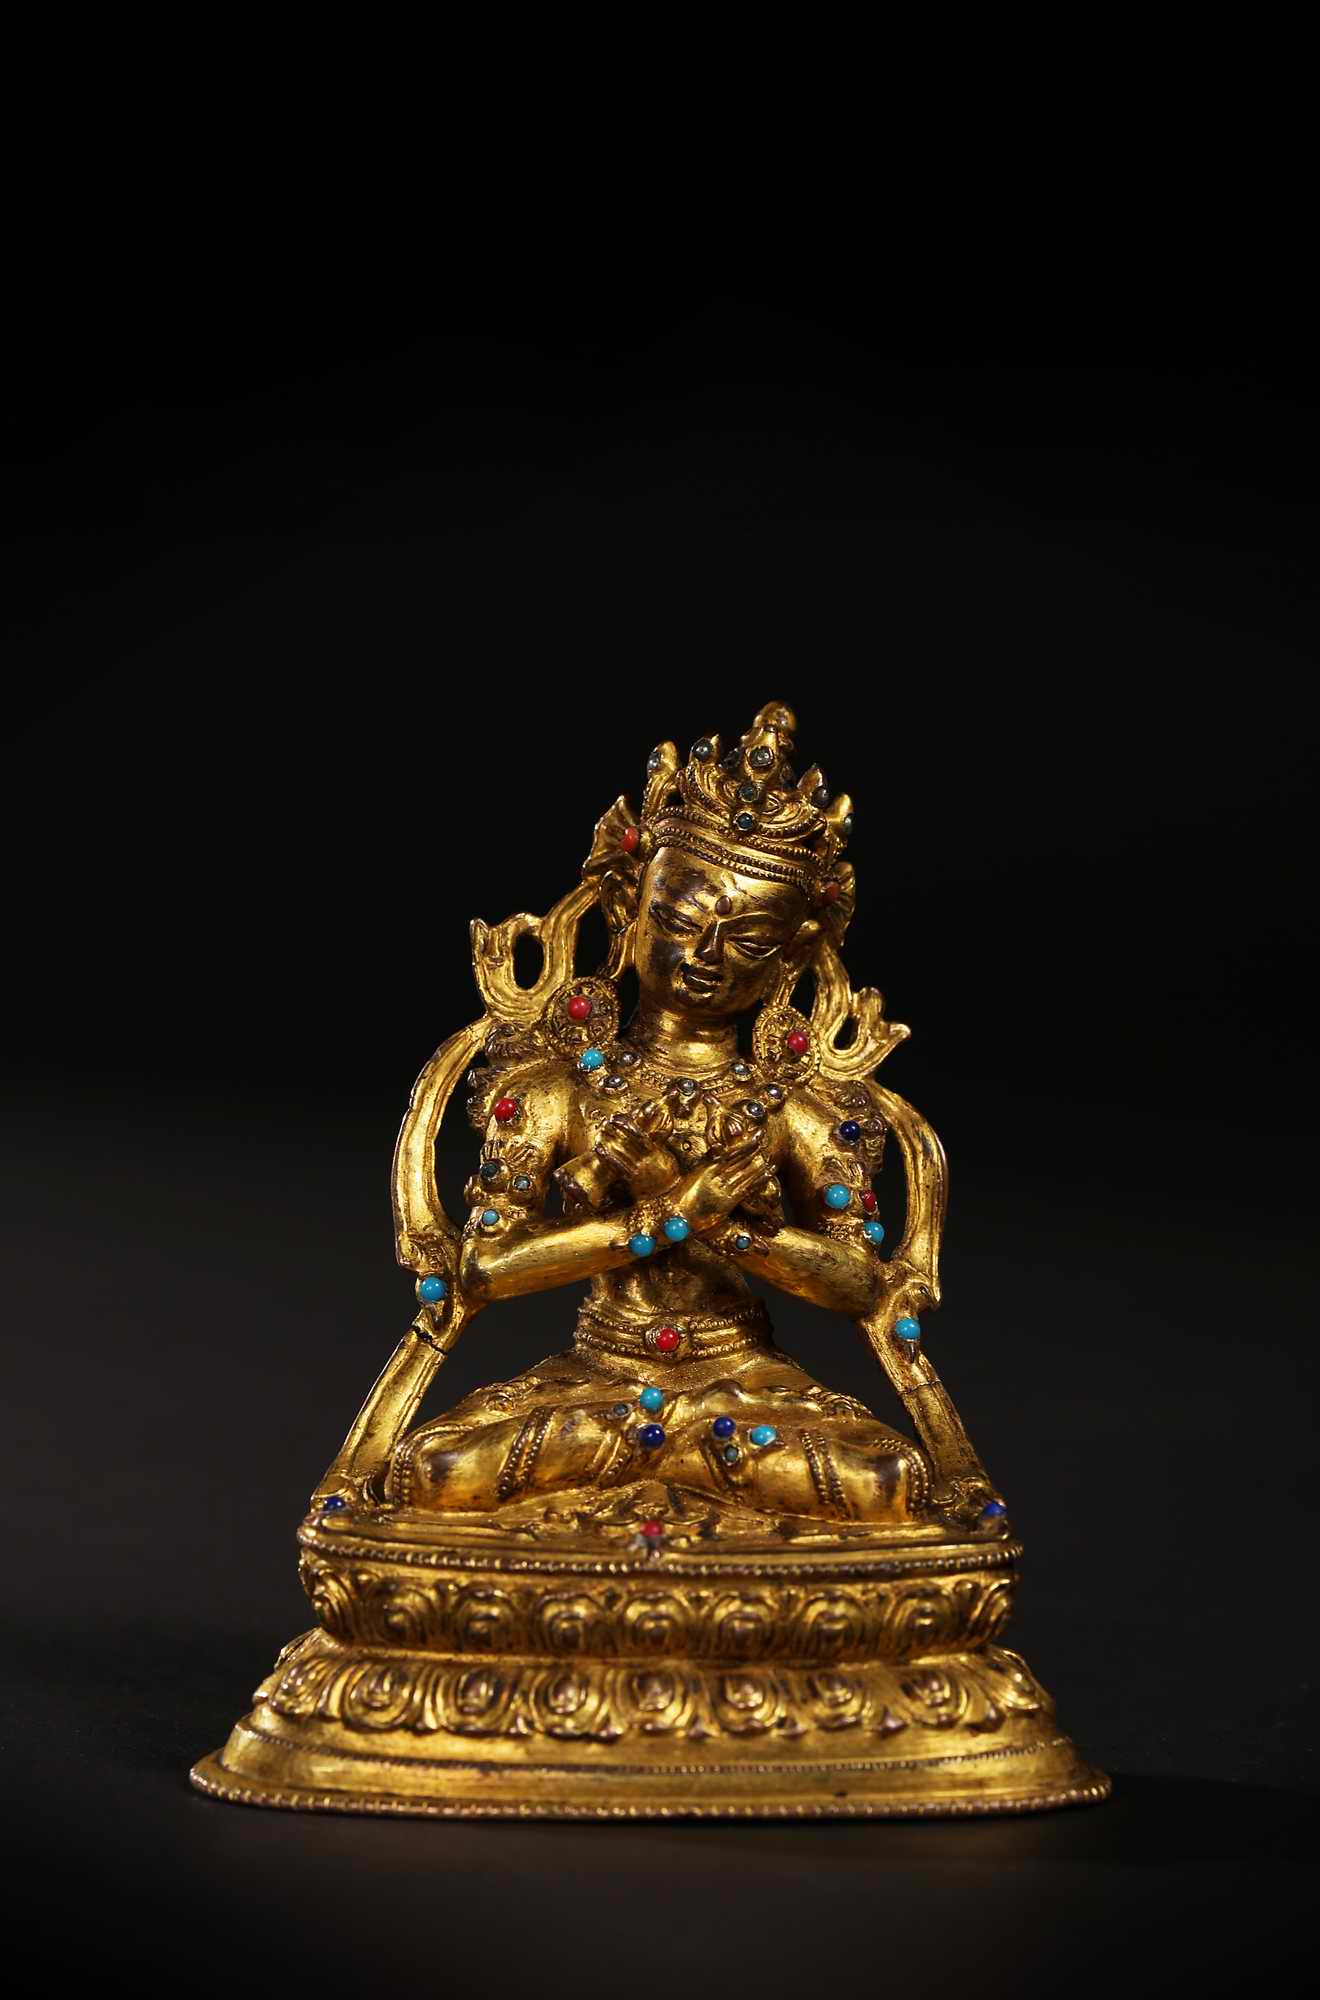 装裱形式：西藏 15世纪金刚总持